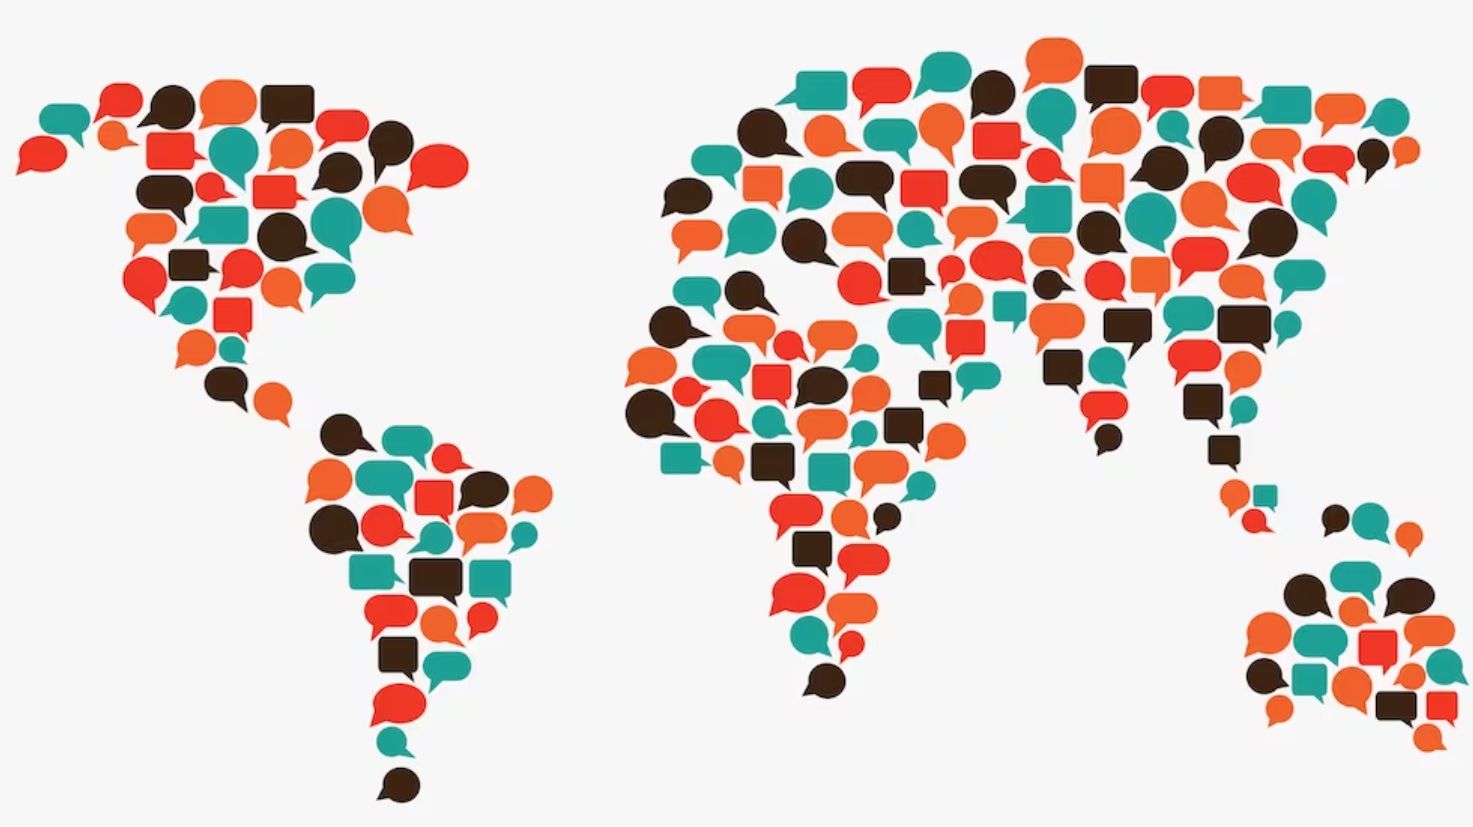 ​Названы 8 самых распространенных языков мира - есть неожиданный сюрприз